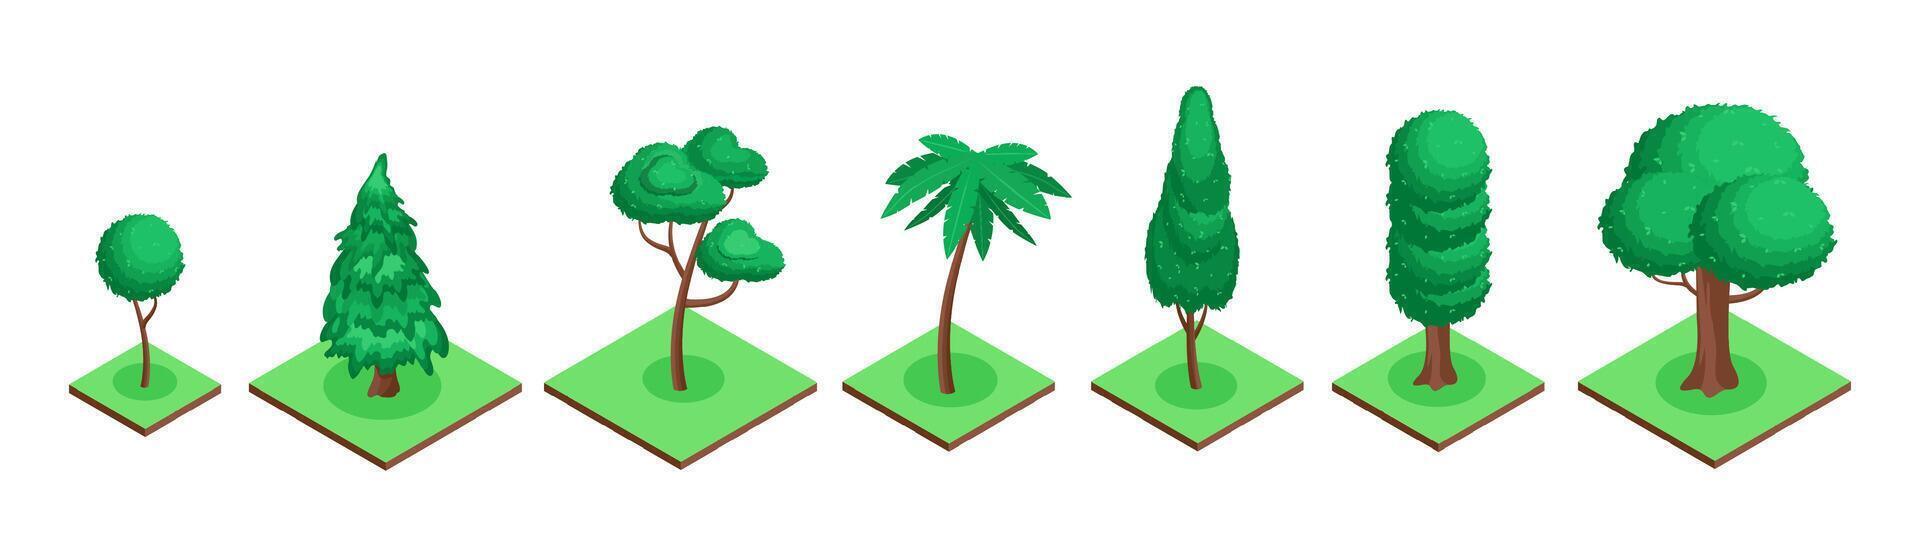 isometrisk grön träd 3d uppsättning för dekoration vektor